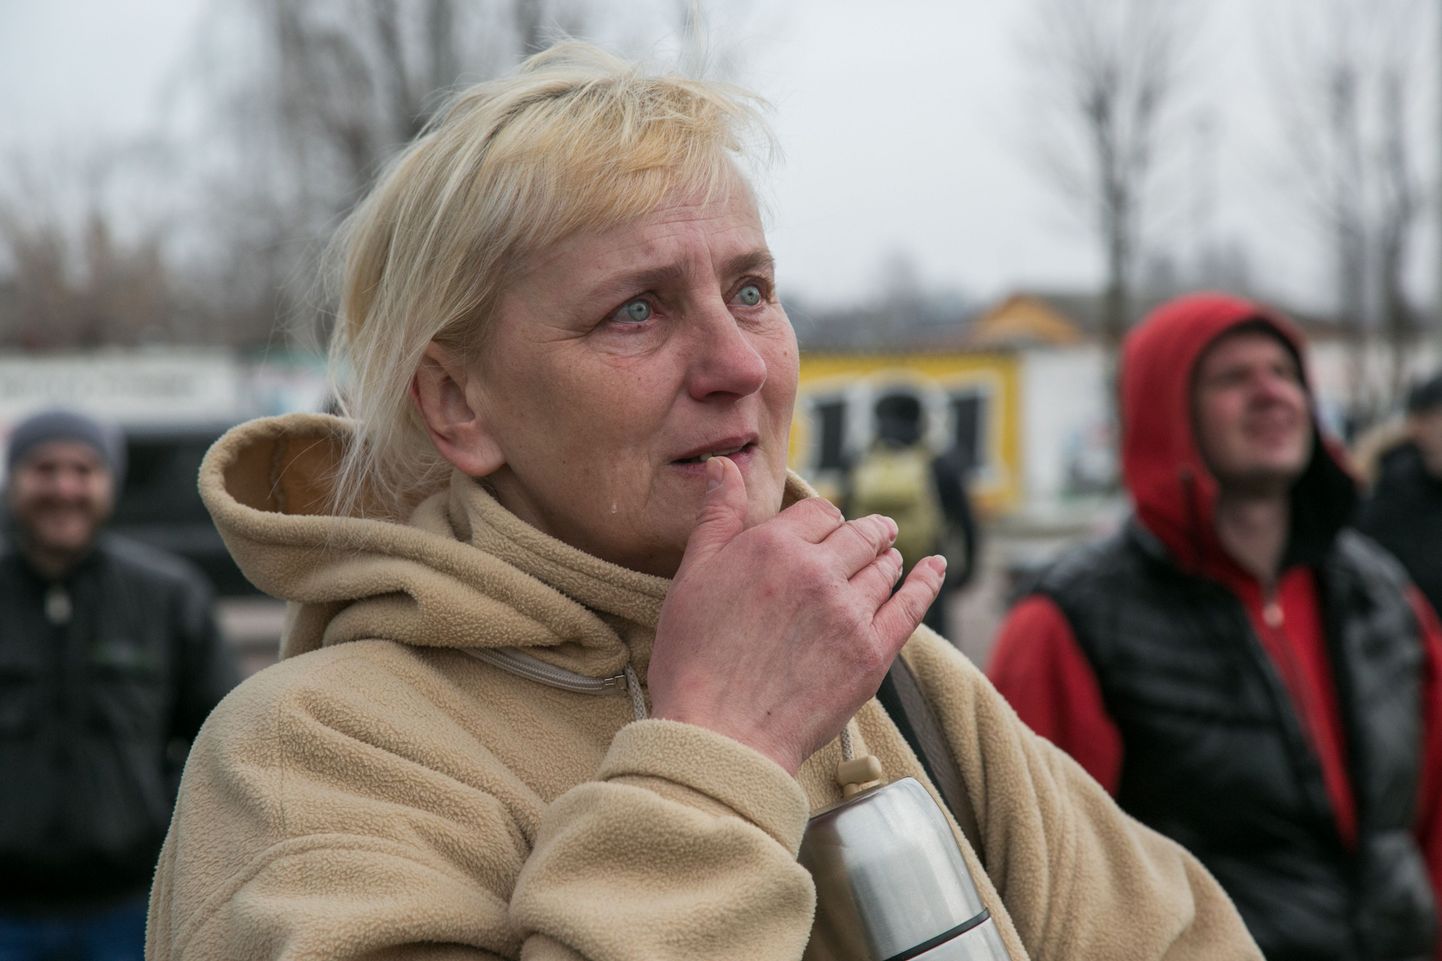 13 päevaks arestimajja kupatatud Maksim Filipovitši ema üleeile Gomeli isolaatori akende all pojale pisarsilmi toetust avaldamas. Tema kõrval kohalikud aktivistid, kellest enamikku peab riik muidusööjateks.